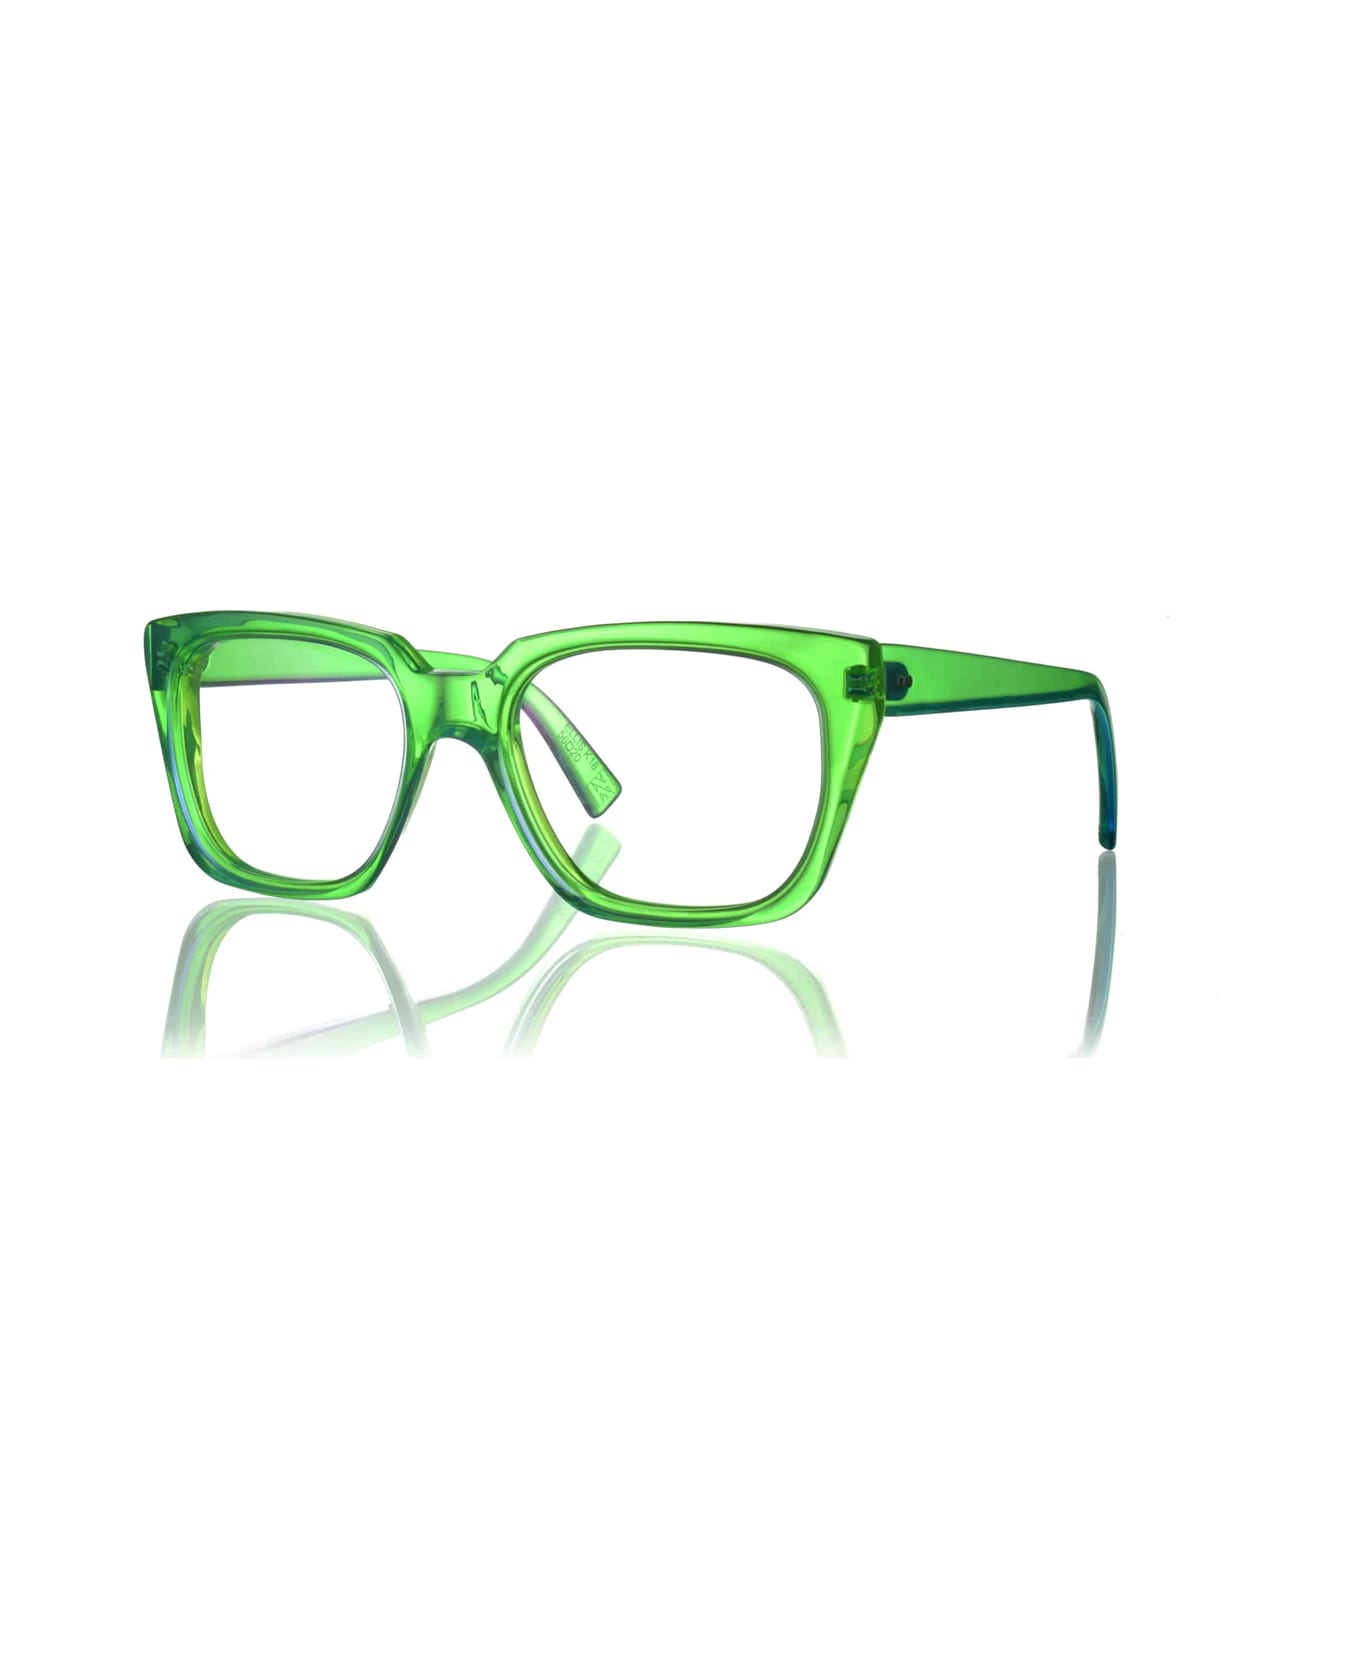 Kirk & Kirk Ellis K18 Glasses - Verde